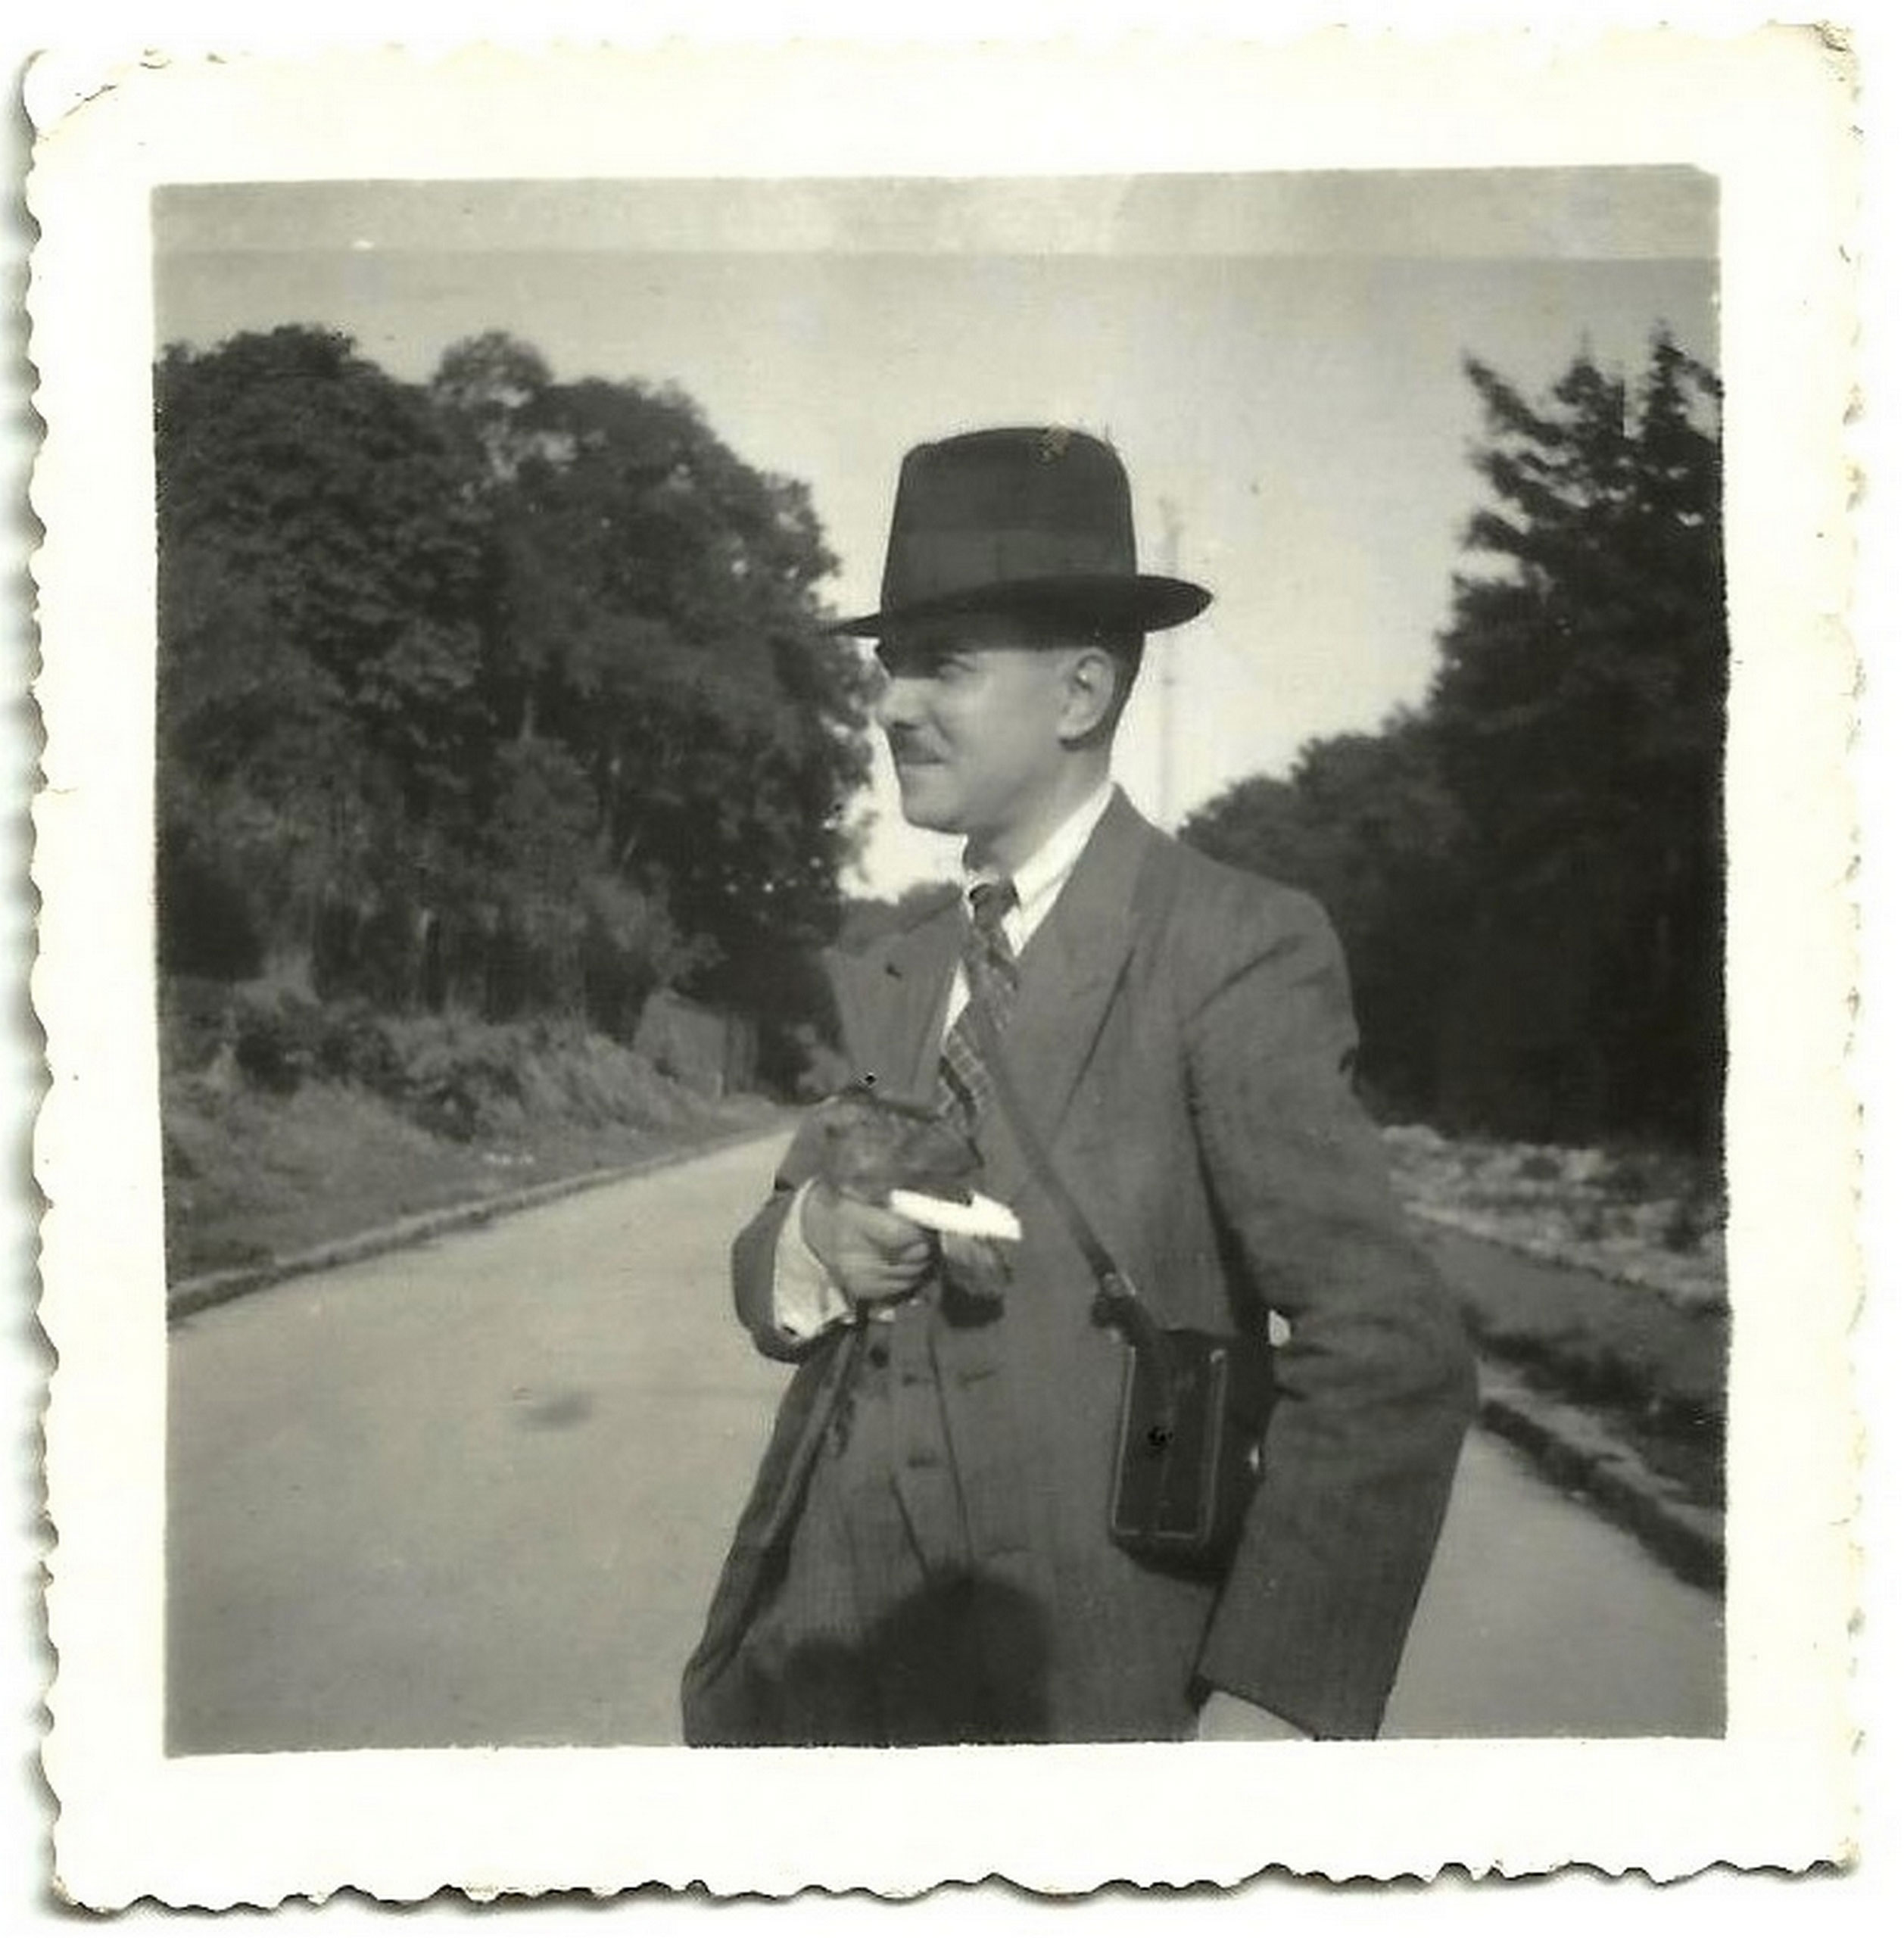 Charles Pichon à 36 ans, photographié au parc de Sceaux en 1934 (Marcelle a alors 13 ans). (© Collection privée). Marcelle avait alors 15 ans et vivait seule avec lui depuis que sa mère était partie sans laisser d’adresse (voir pastille 17). Or, Charles était, parait-il, très avare, au point de marquer au stylo bille les parts de camembert…<br><br>